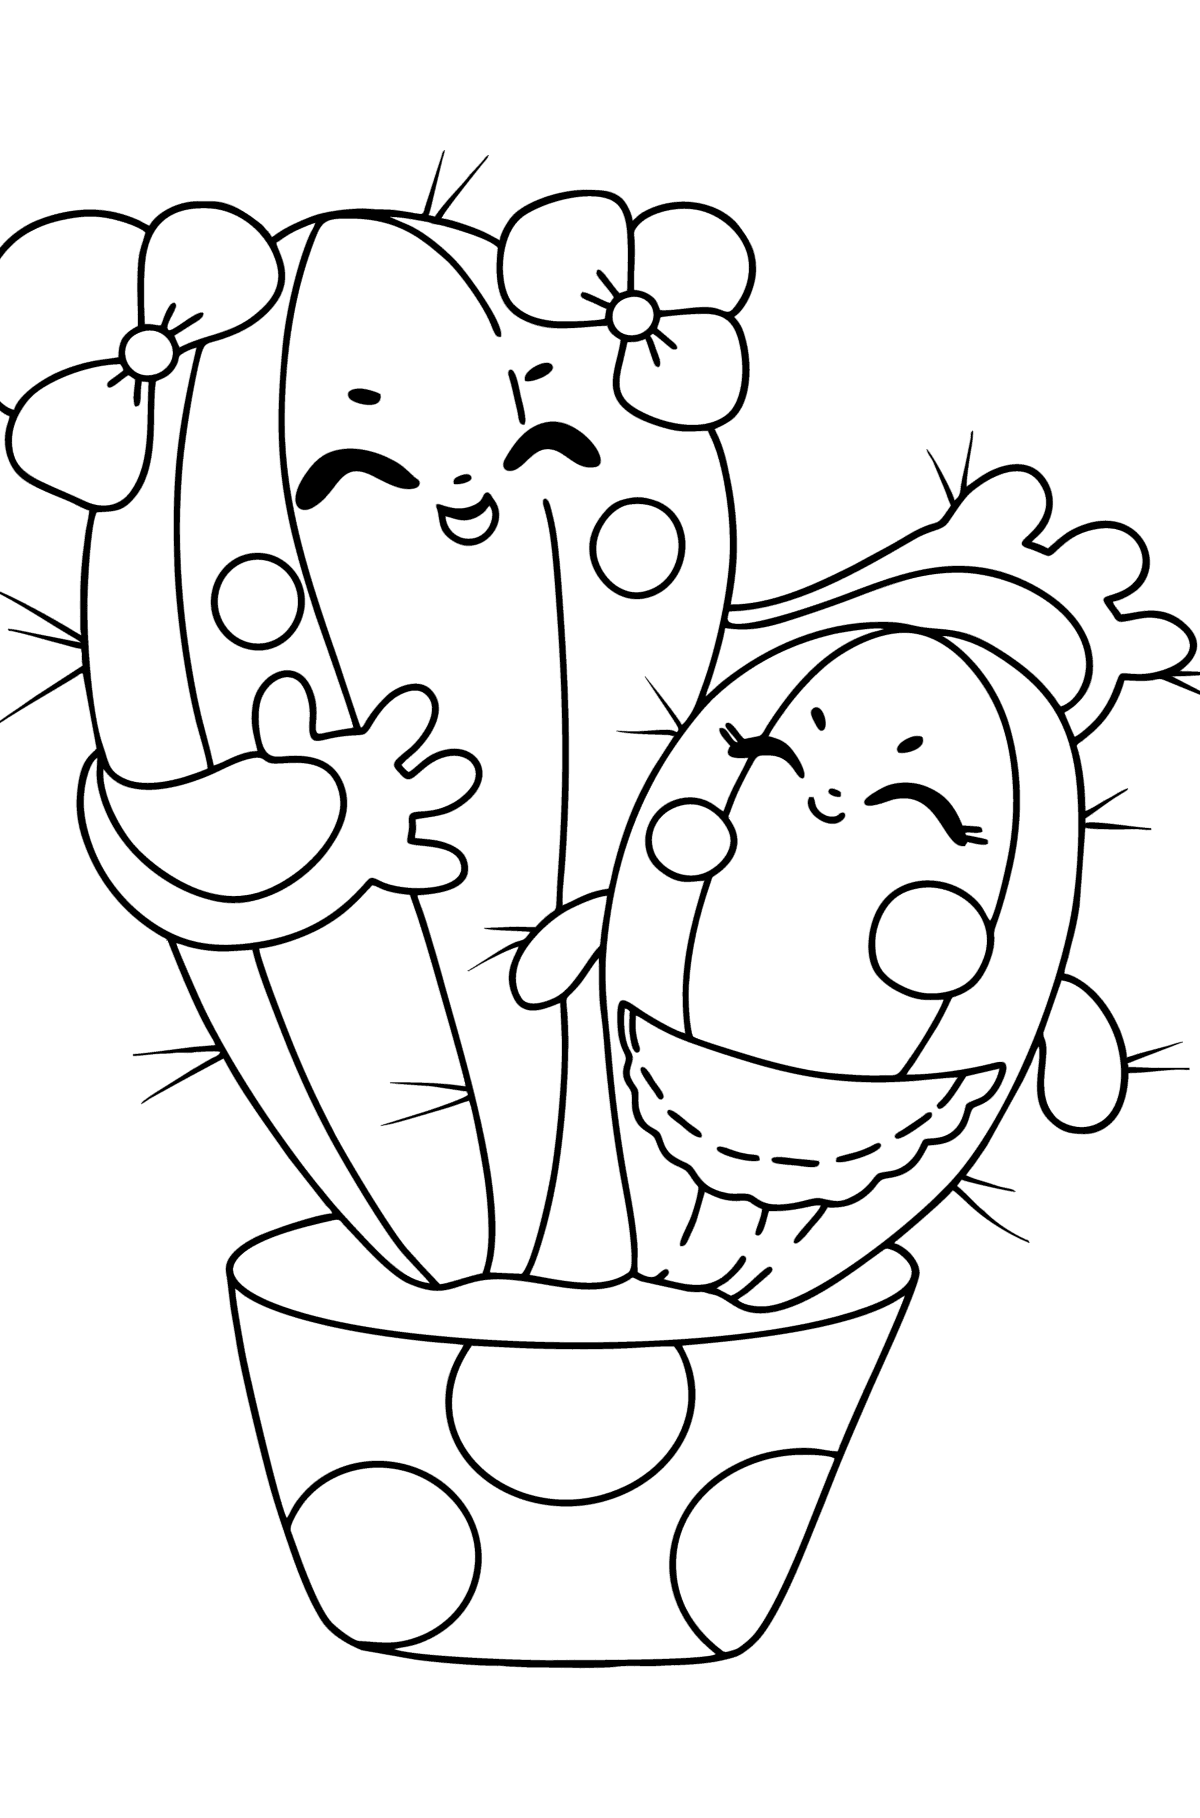 Dibujo de Cactus de dibujos animados para colorear - Dibujos para Colorear para Niños